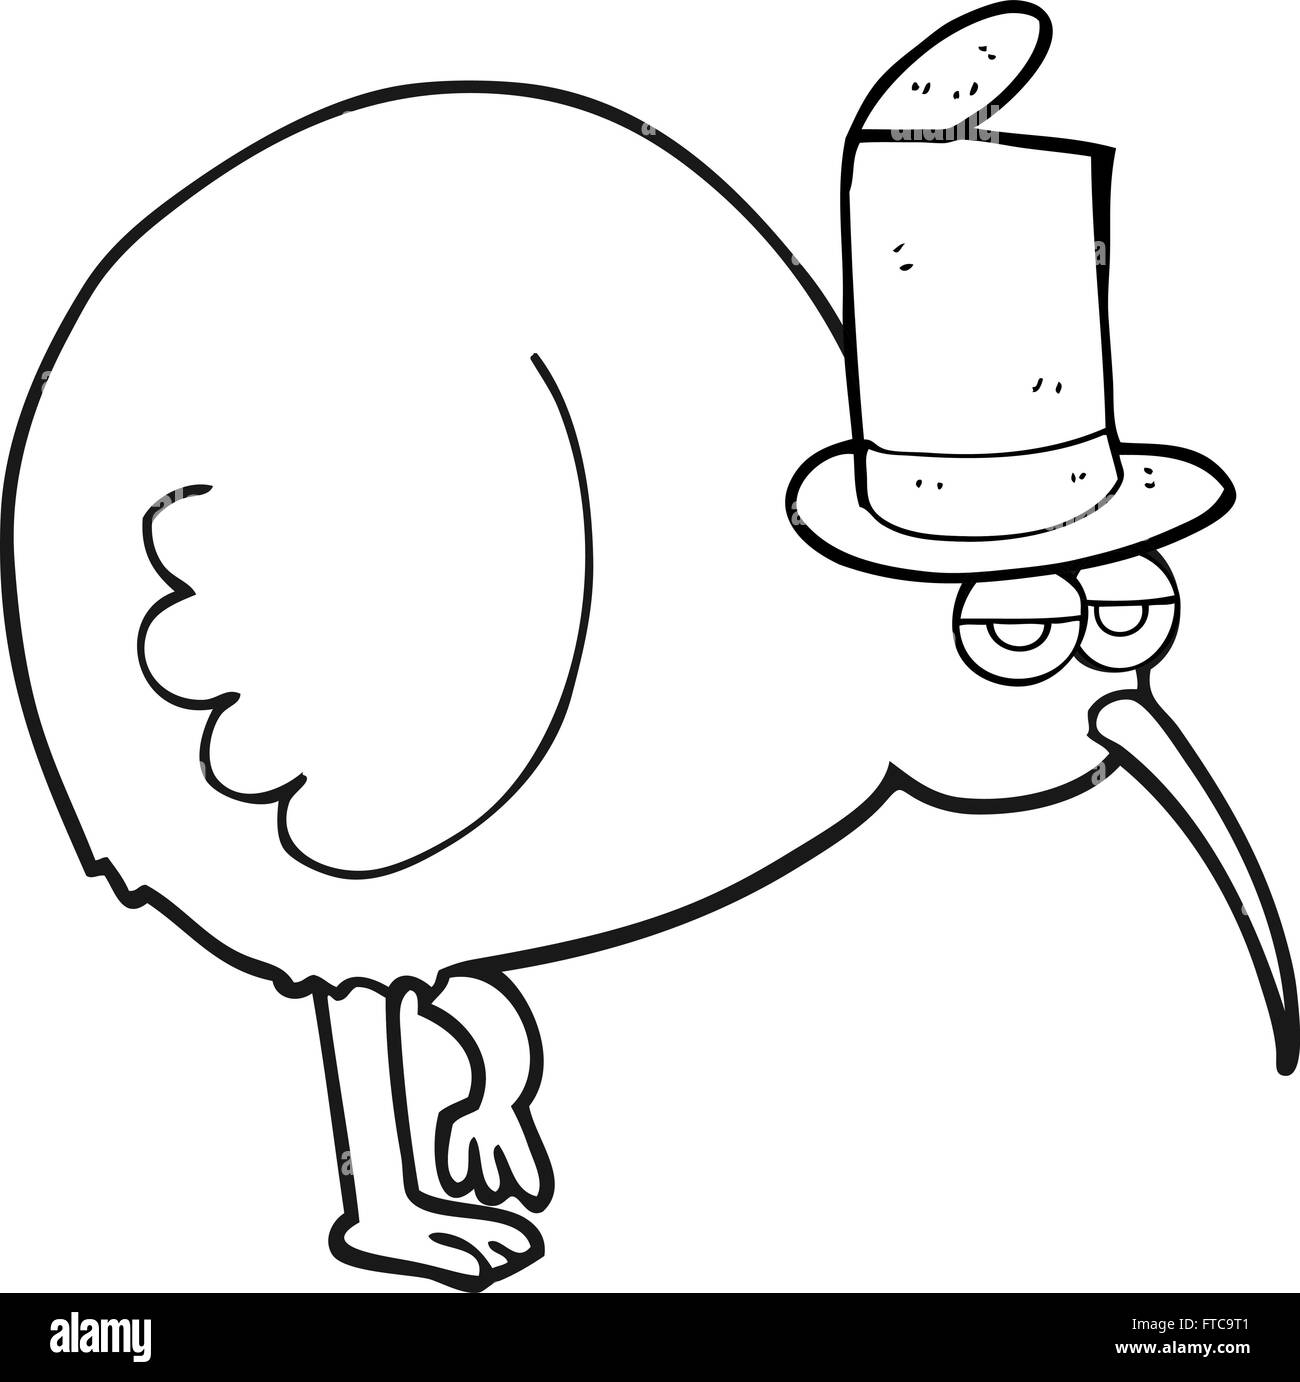 freihändig gezeichnet schwarz / weiß Cartoon-Kiwi-Vogel Stock Vektor